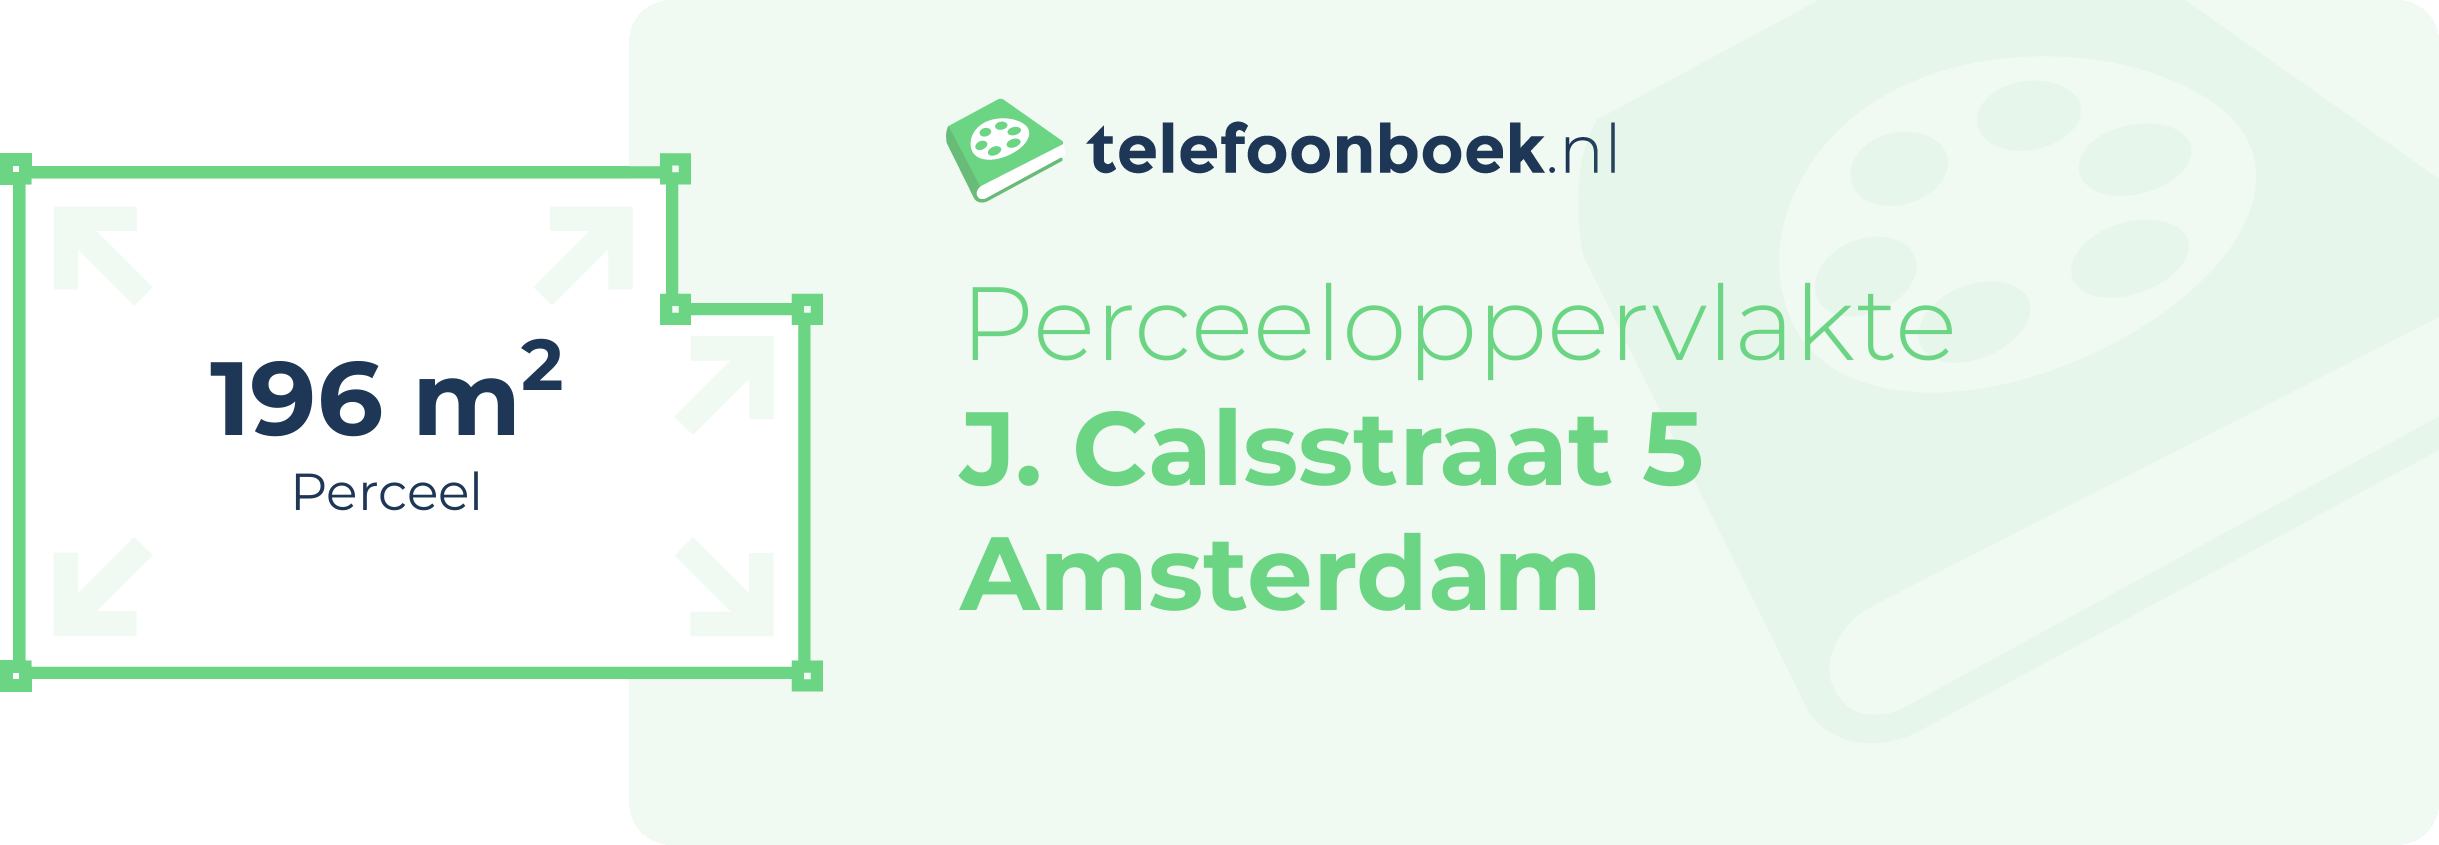 Perceeloppervlakte J. Calsstraat 5 Amsterdam